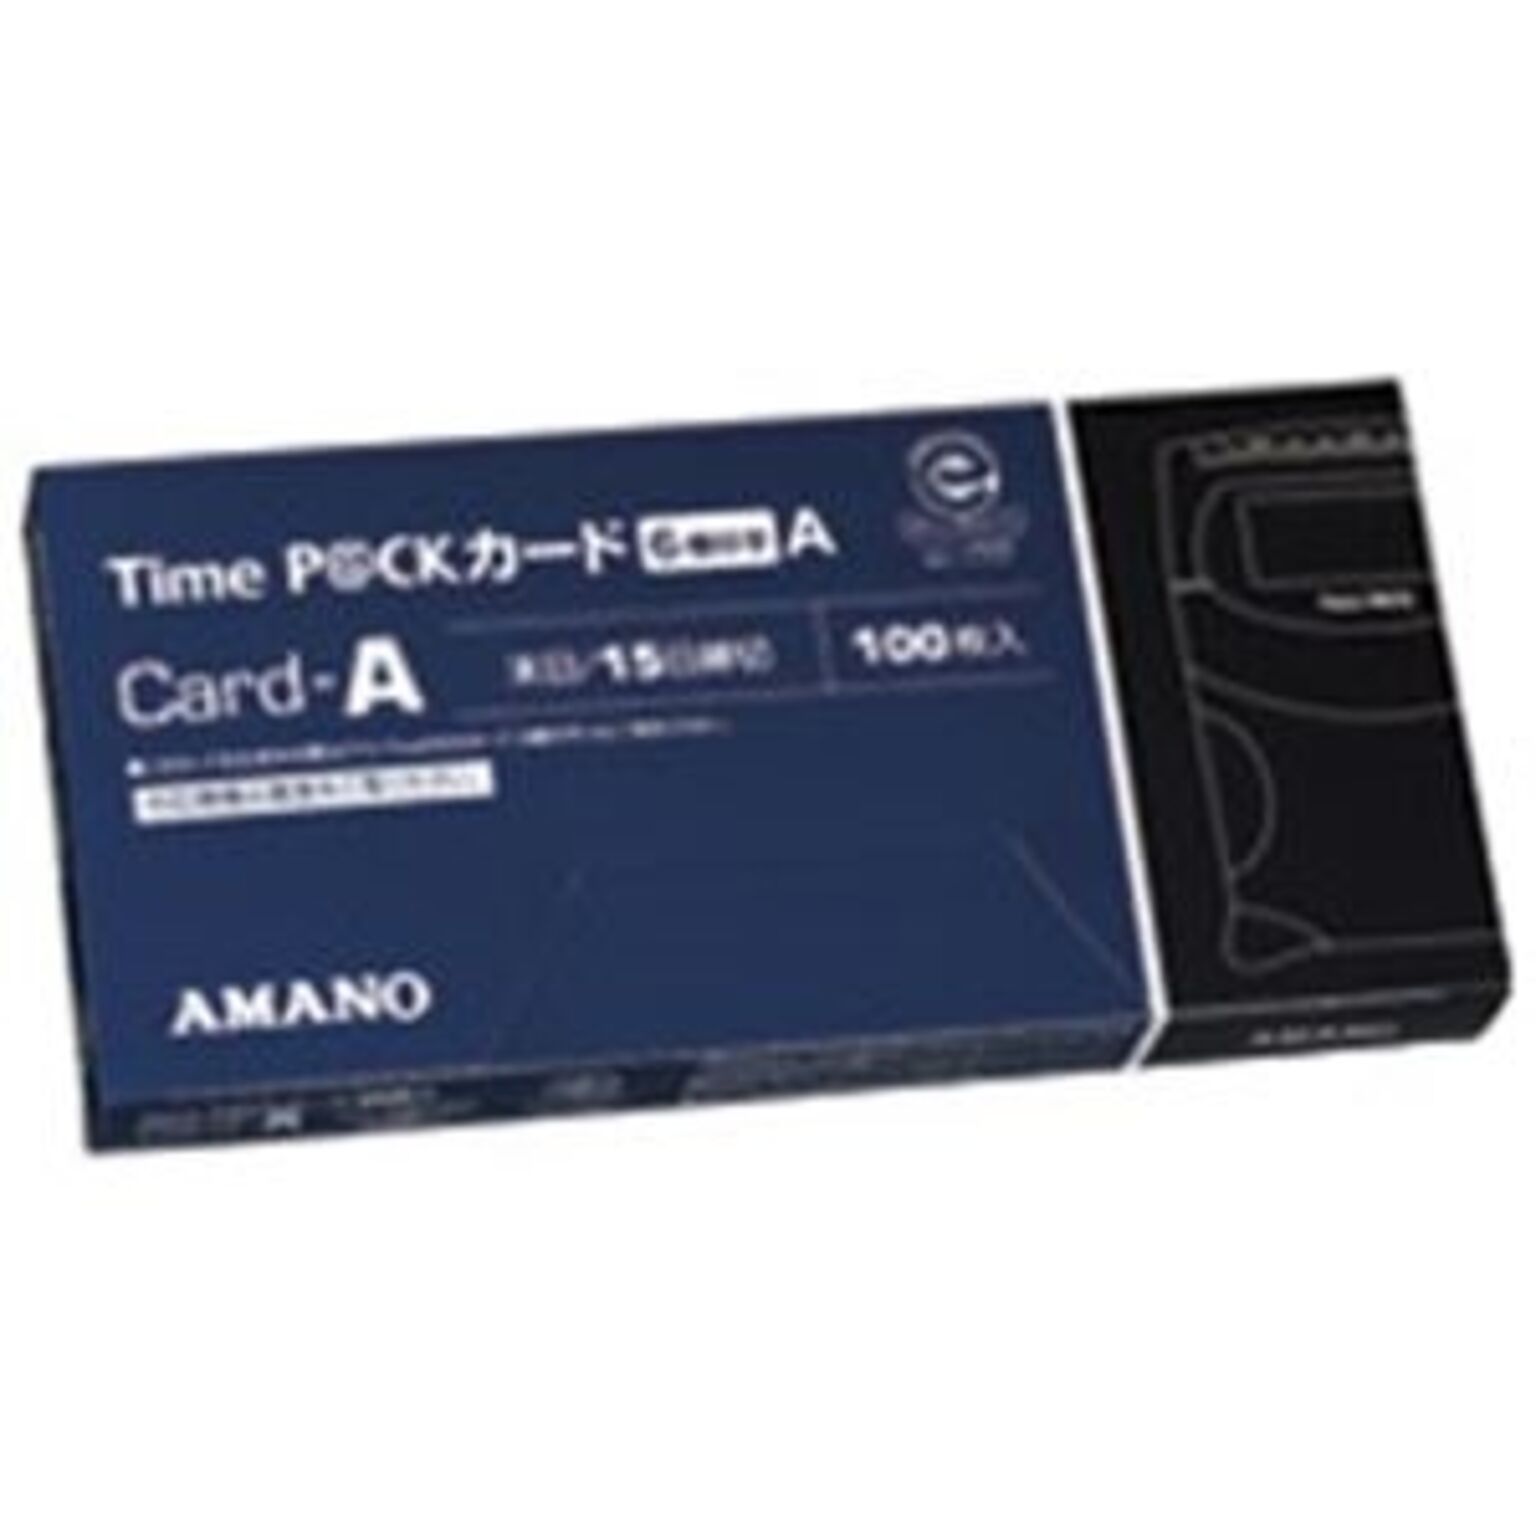 業務用20セット) アマノ タイムパックカード（6欄印字）A 通販 RoomClipショッピング